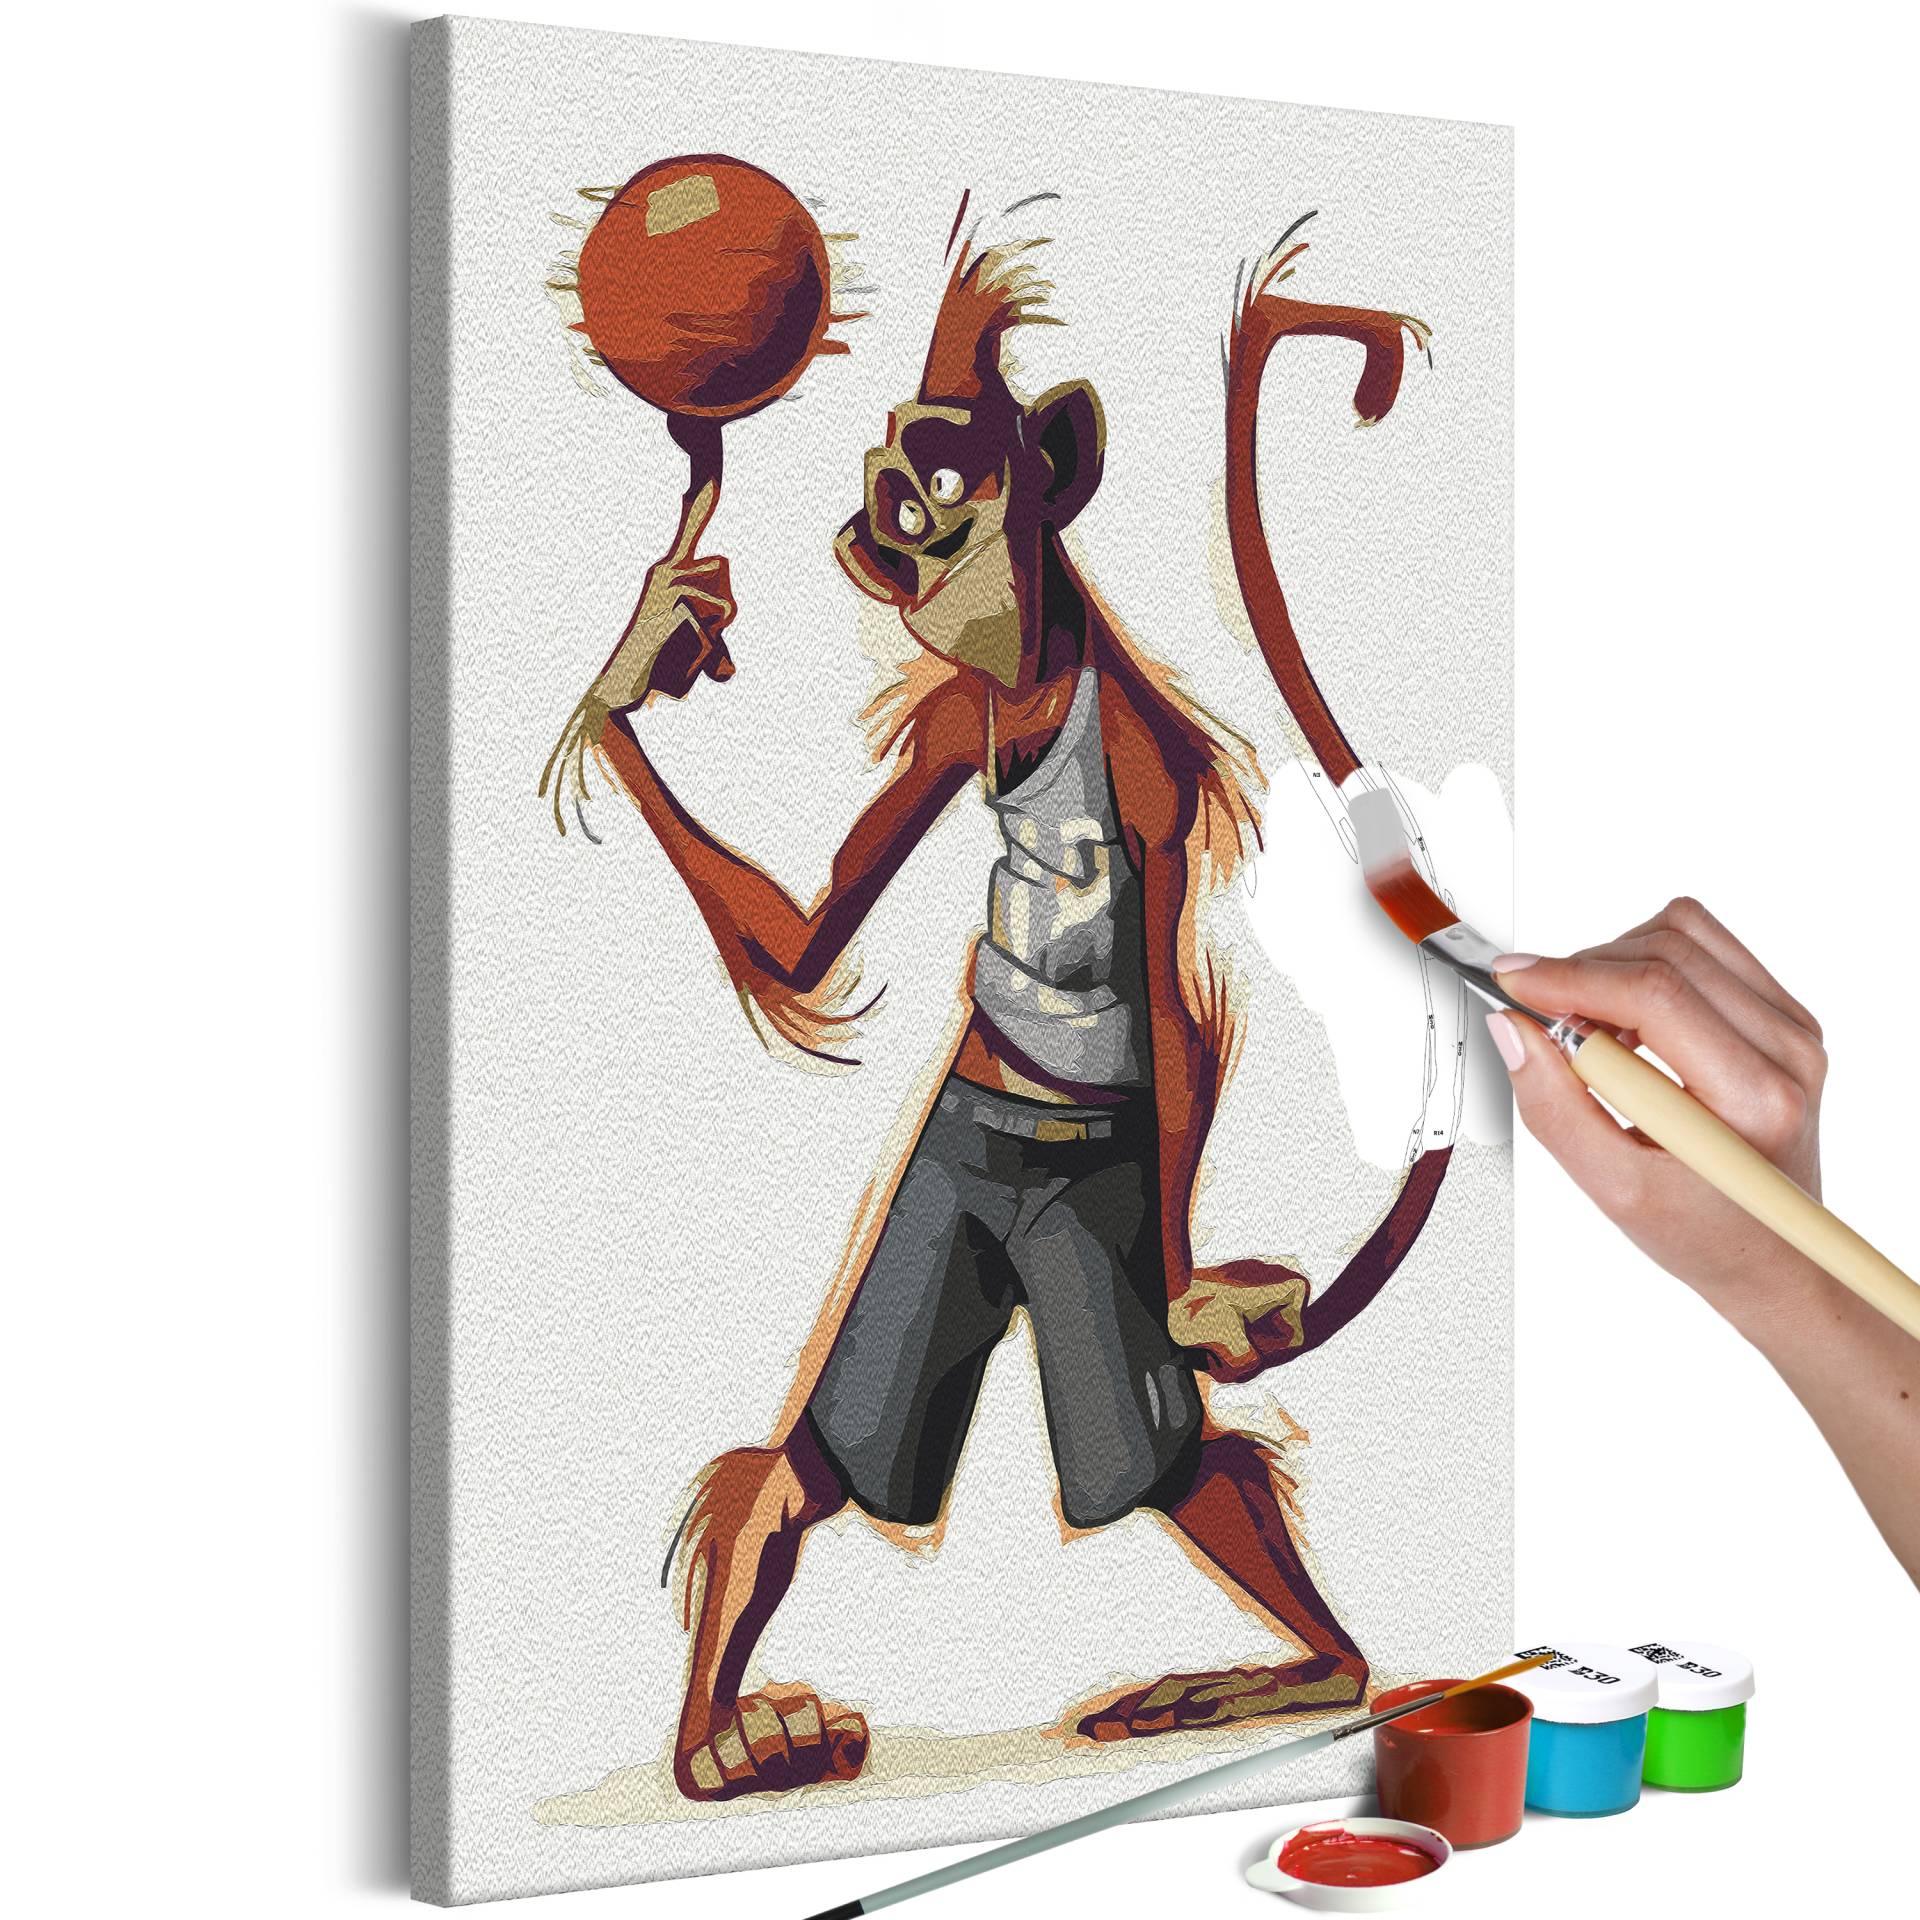 Malen nach Zahlen - Monkey Basketball Player von Artgeist